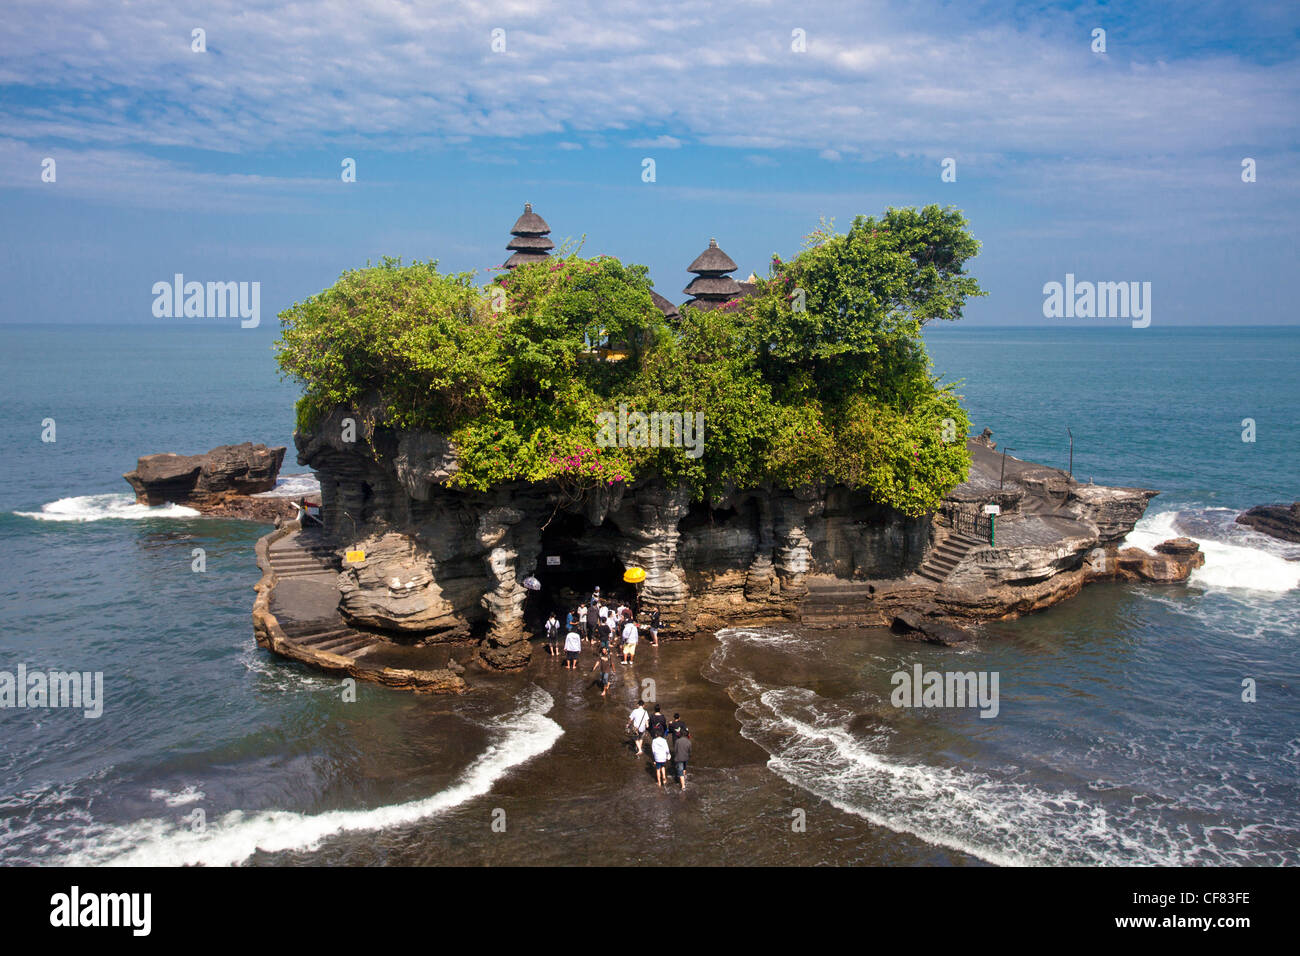 Indonesia, Asia, Bali  Island, Tanah Lot Sea, Temple, tourism, island, temple, exotic, tide, famous Stock Photo